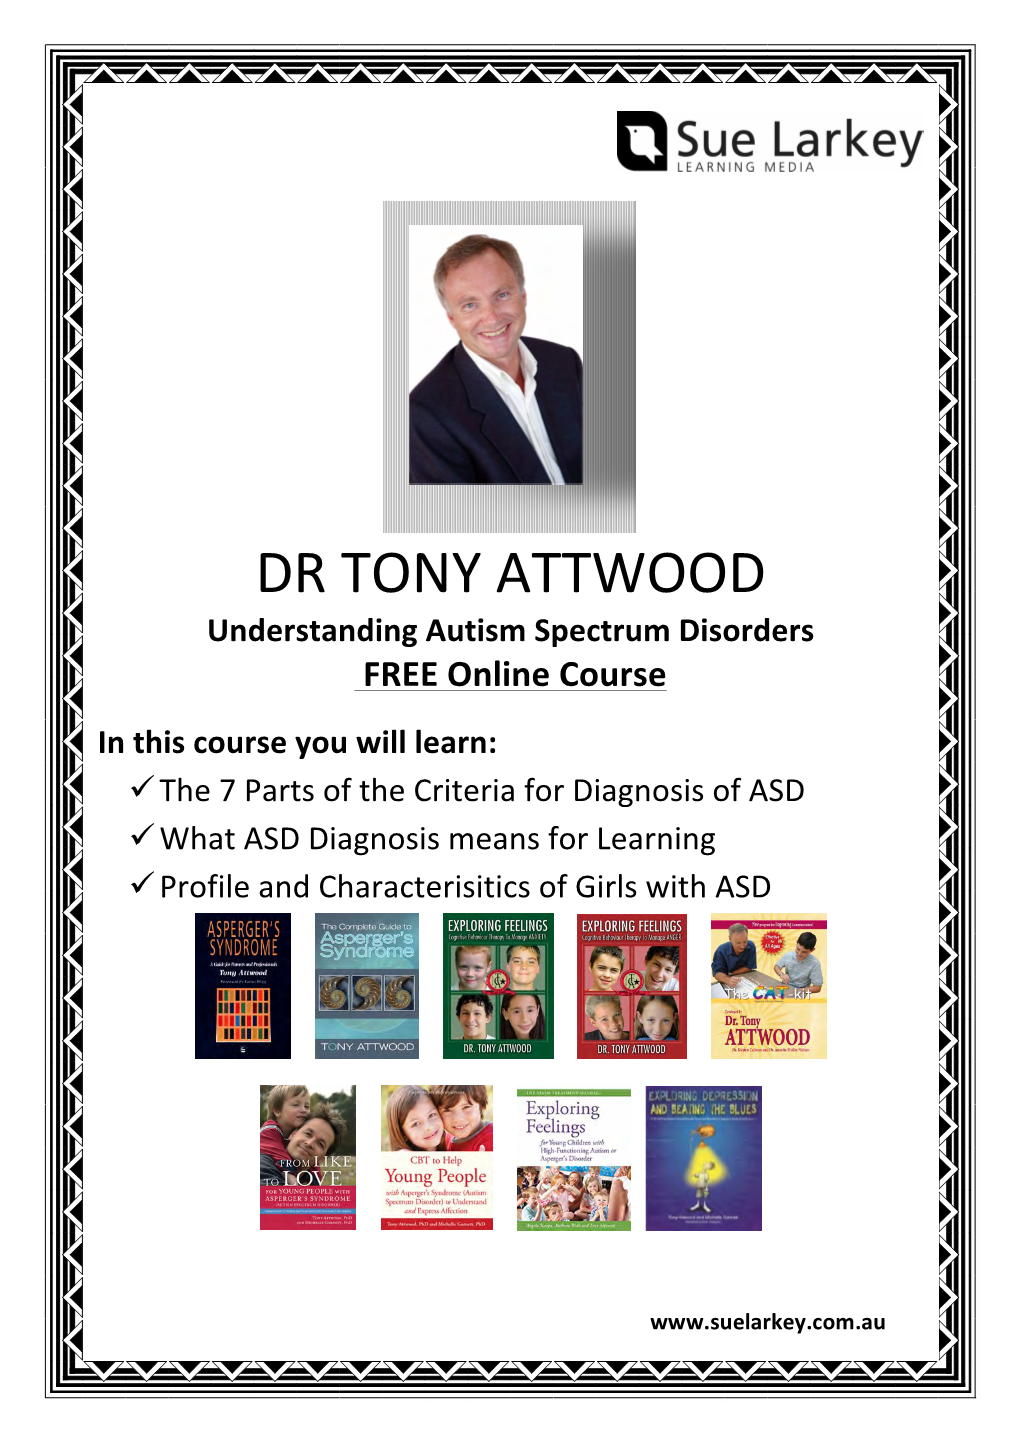 Dr Tony Attwood